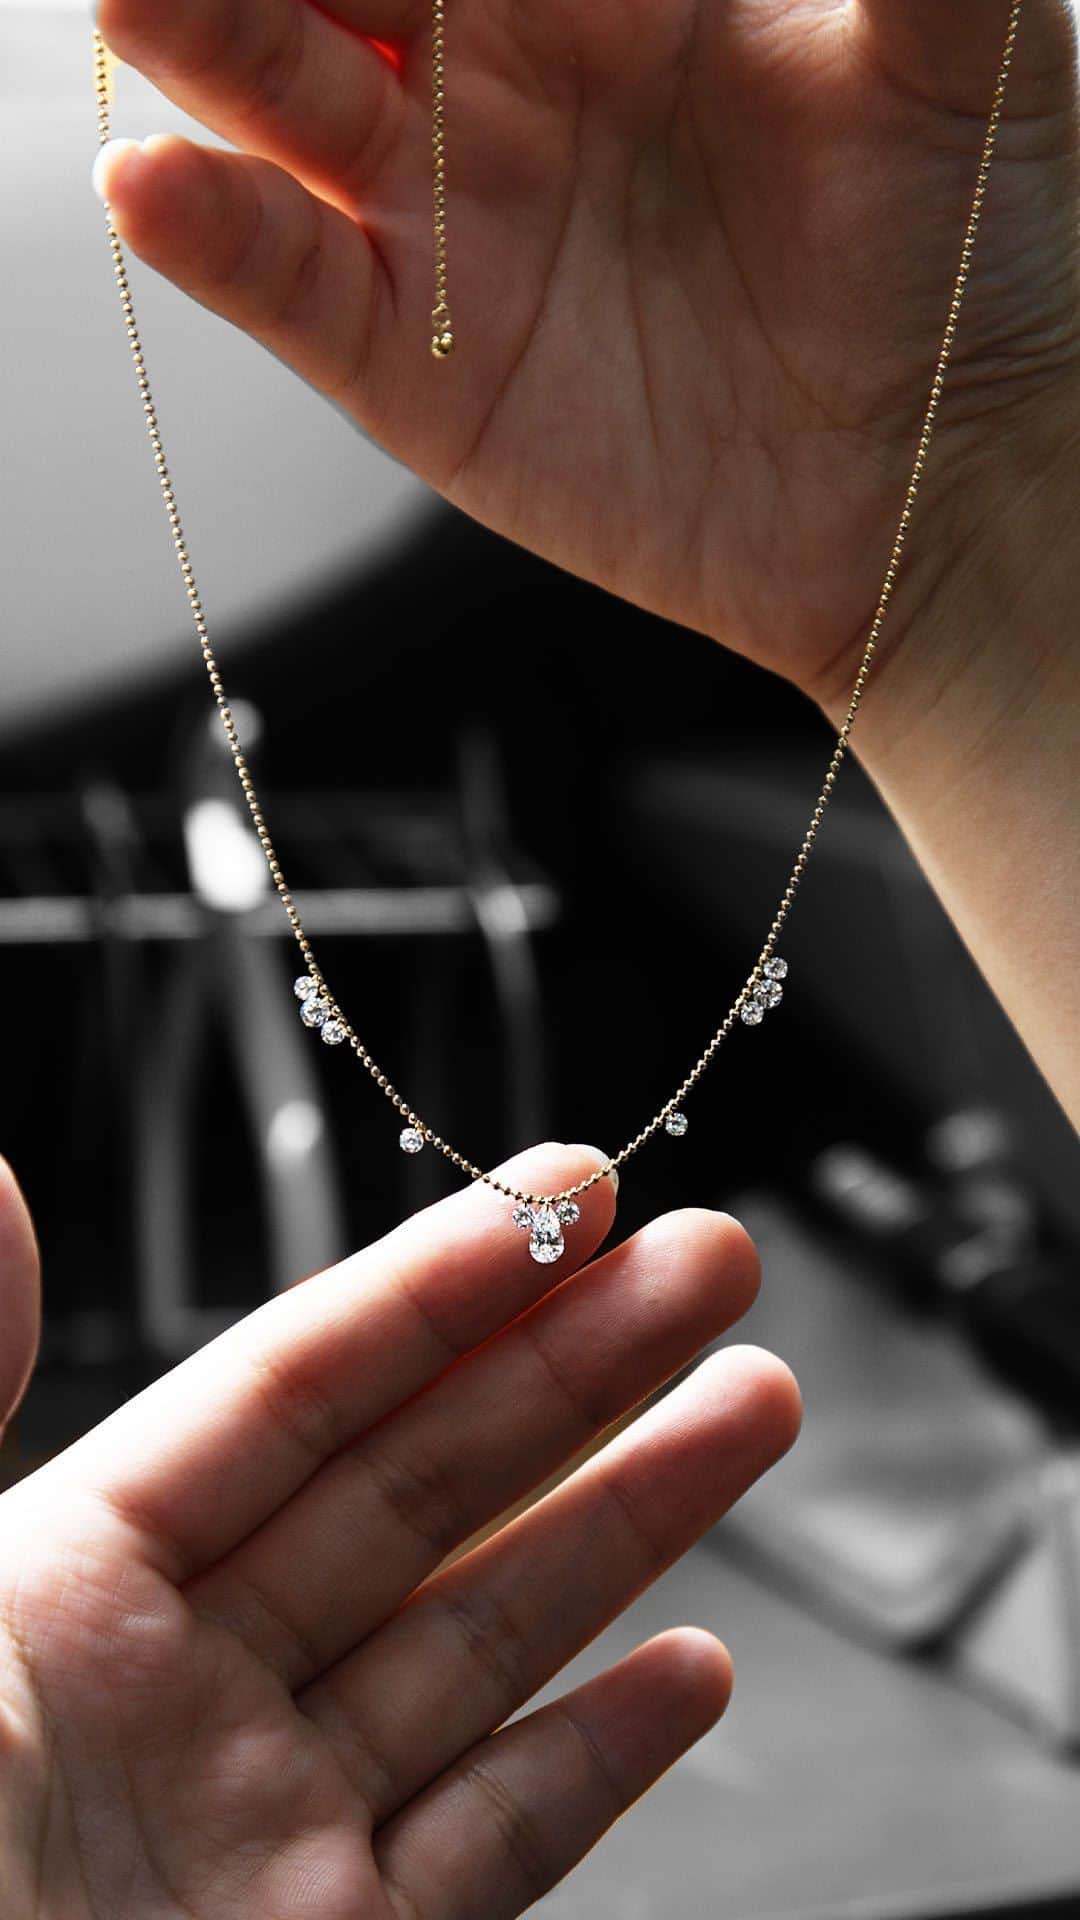 AbHerї〈アベリ〉のインスタグラム：「【AbHerïのクラフトマンシップ – レーザーホールダイヤモンドジュエリー –】アベリのレーザーホールダイヤモンドネックレスの制作過程をご紹介いたします。ダイヤモンドの無垢な輝きをいかしたレーザーホールダイヤモンドシリーズは、シンプルがゆえに作りの正確さがもとめられるデザインです。   すべてのダイヤモンドが美しく見えるよう、ダイヤモンドの形や大きさにあわせてバランスを確認しながら慎重に仕立てていきます。ほんのわずかでもパーツが歪めば、ダイヤモンドの向きも変わってしまう繊細な作業。ダイヤモンドの小さな個体差も見極めながら、職人の手の感覚によって丁寧にお作りしています。 　 　 　 ▶オフィシャルサイト・オンラインショップは @abheri_official のリンク先abheri.comよりご覧いただけます。 　 　 　 #abheri #abherï #アベリ #ジュエリー #ダイヤモンド #ダイヤモンドジュエリー #ファインジュエリー #レーザーホールダイヤモンド #ネックレス #ダイヤモンドネックレス #ステーションネックレス #ペアシェイプダイヤモンド #宝石 #宝石好き #ジュエリー好き #ご褒美ジュエリー #記念日ジュエリー #お守りジュエリー #オーダージュエリー #オーダーメイドジュエリー #手仕事 #ジュエリー制作 #ジュエリー職人 #職人技 #ジュエリーショップ #ジュエリーブランド #jewelry #diamondnecklace #necklace #japanbrand」